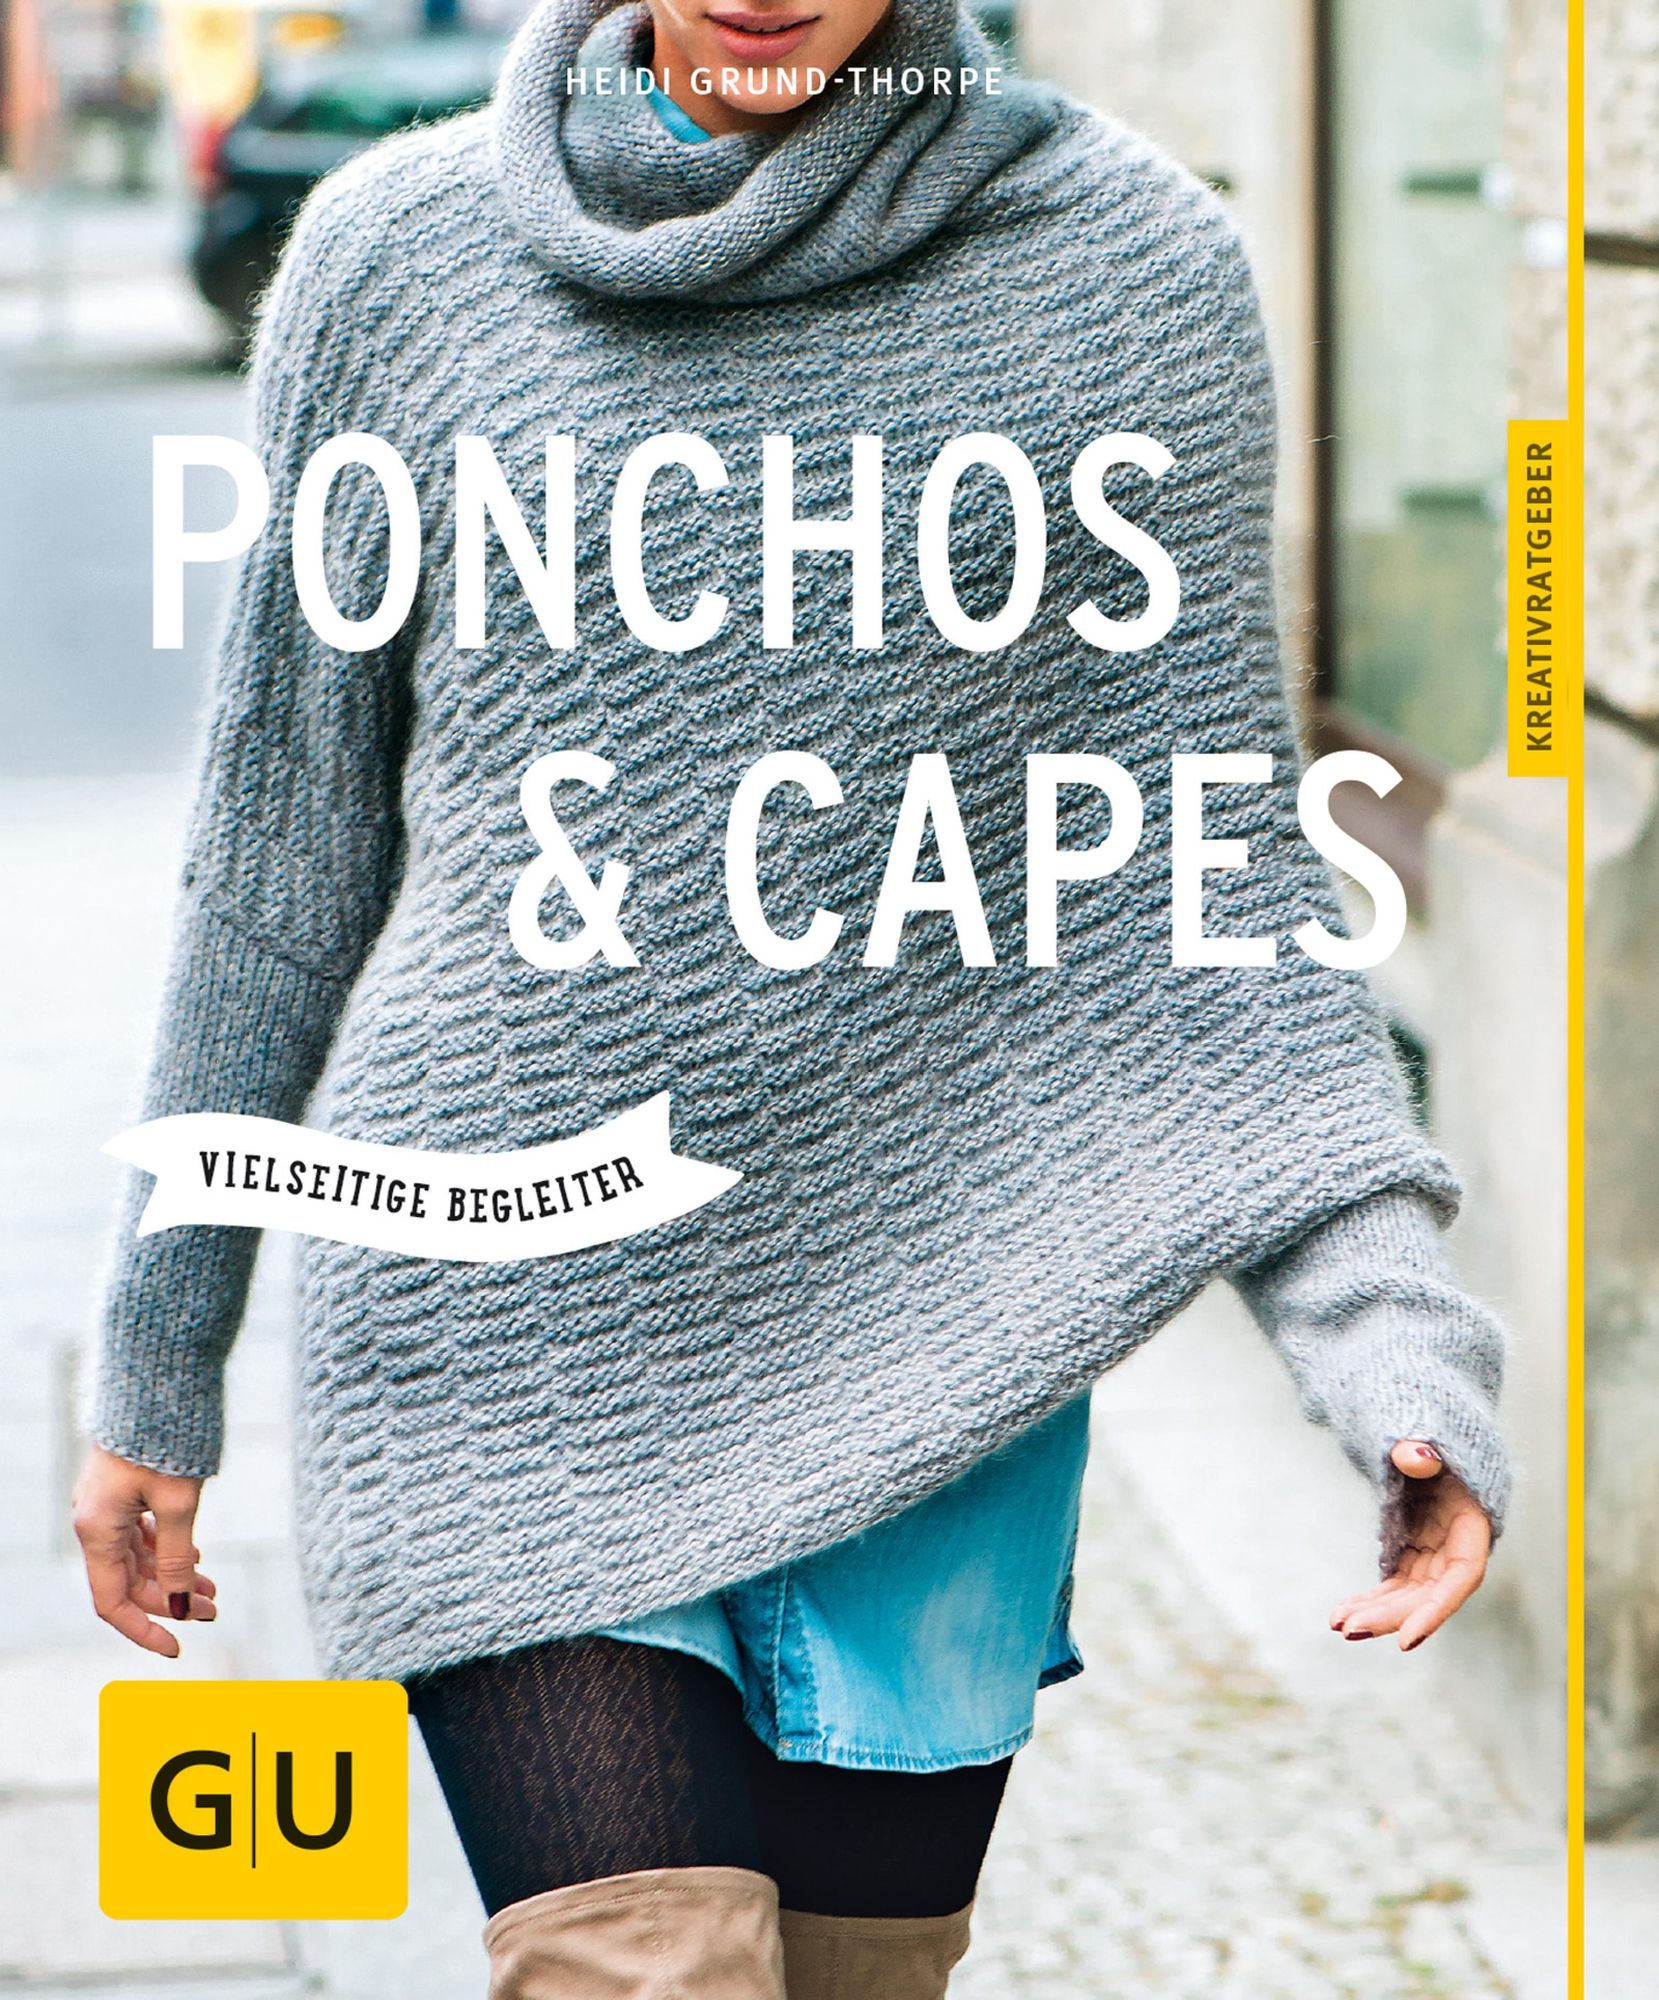 Præfiks design Pasture Ponchos und Capes stricken' von 'Heidi Grund-Thorpe' - eBook